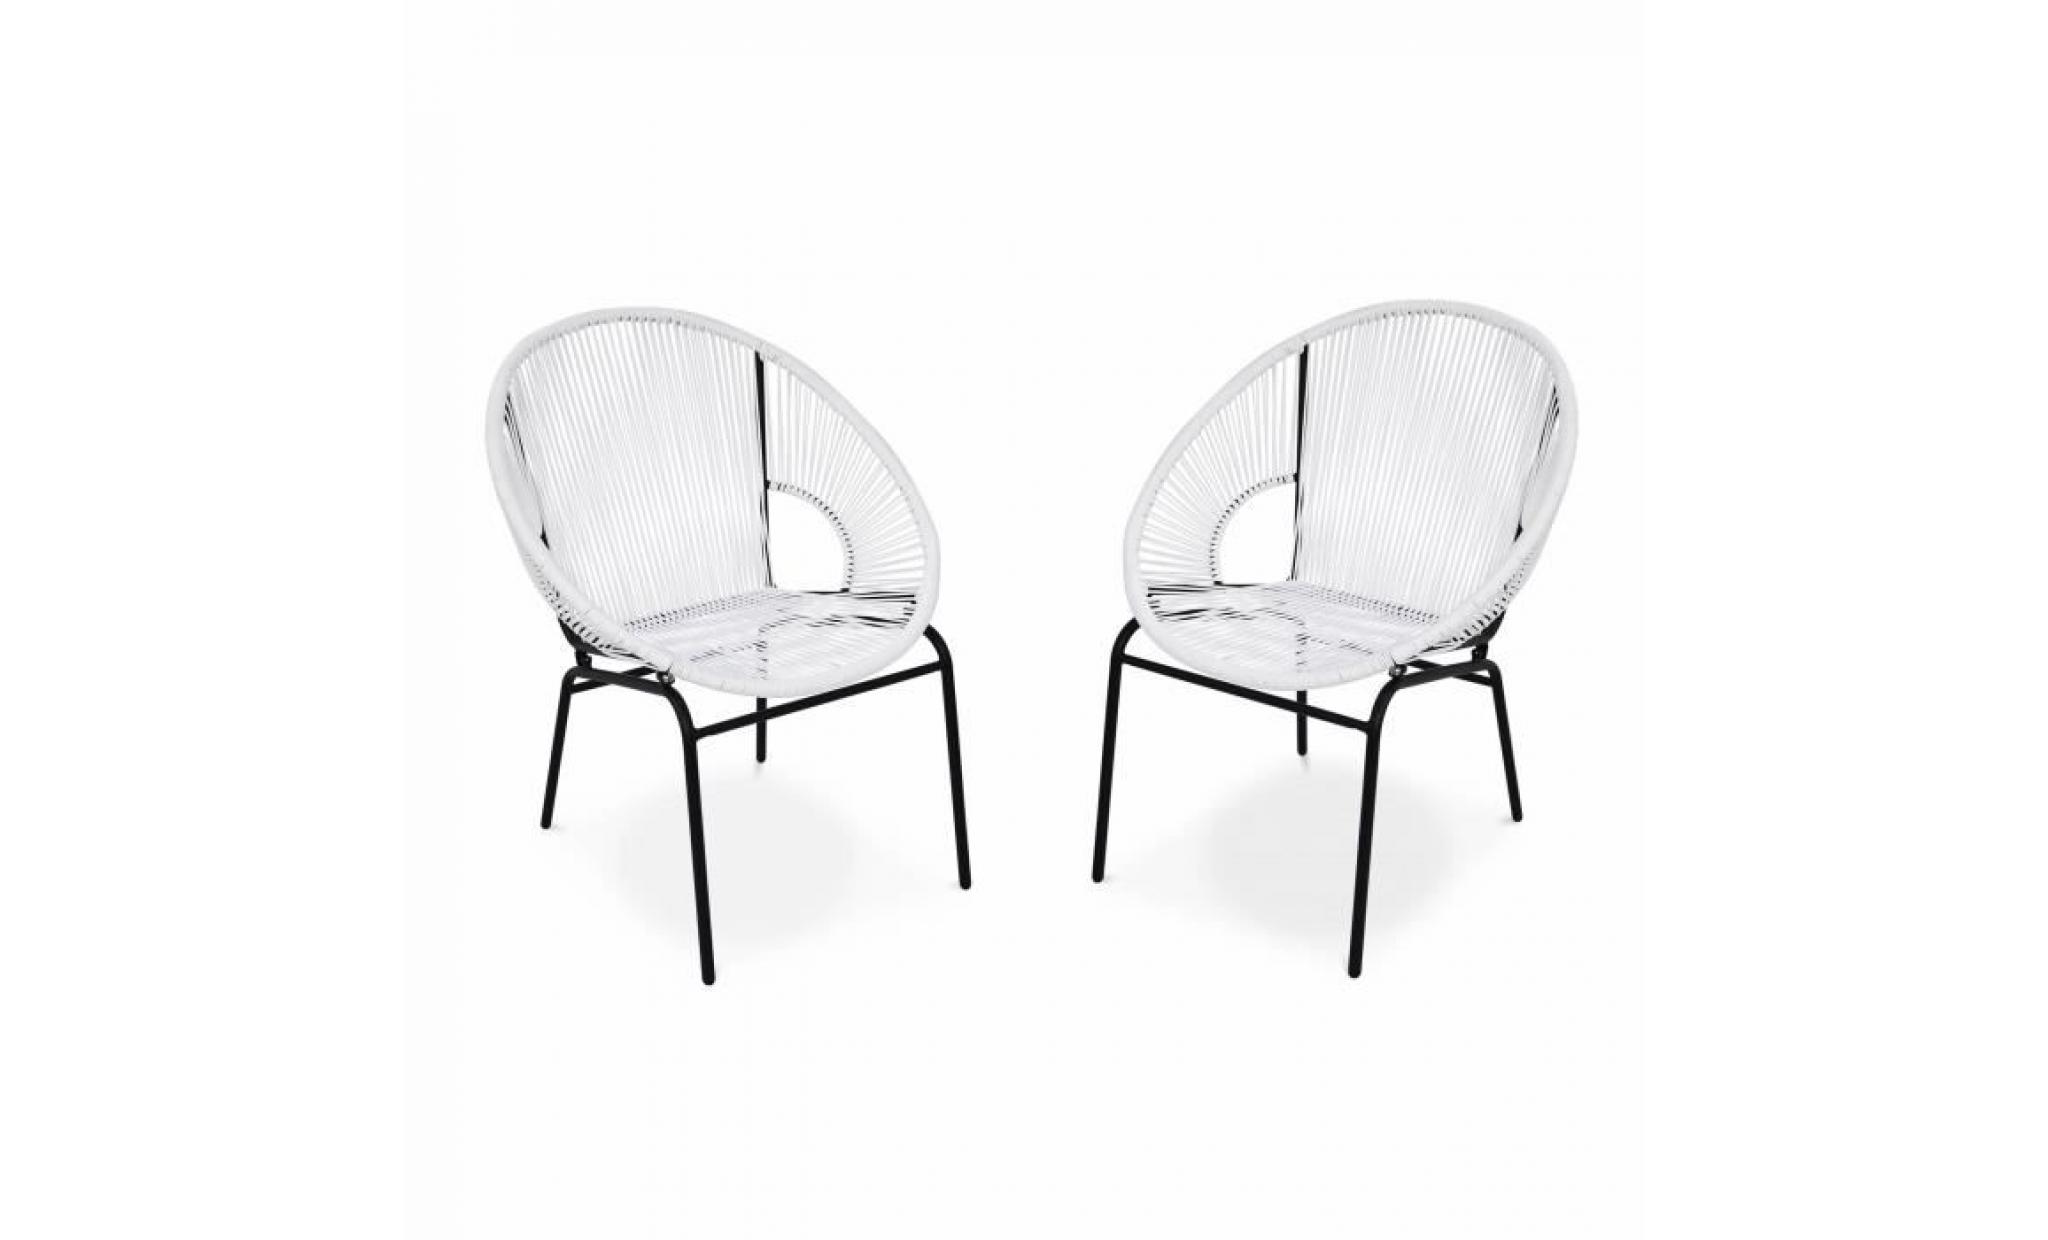 2 fauteuils design   mexico blanc   fauteuils design cordage pvc par lot de 2